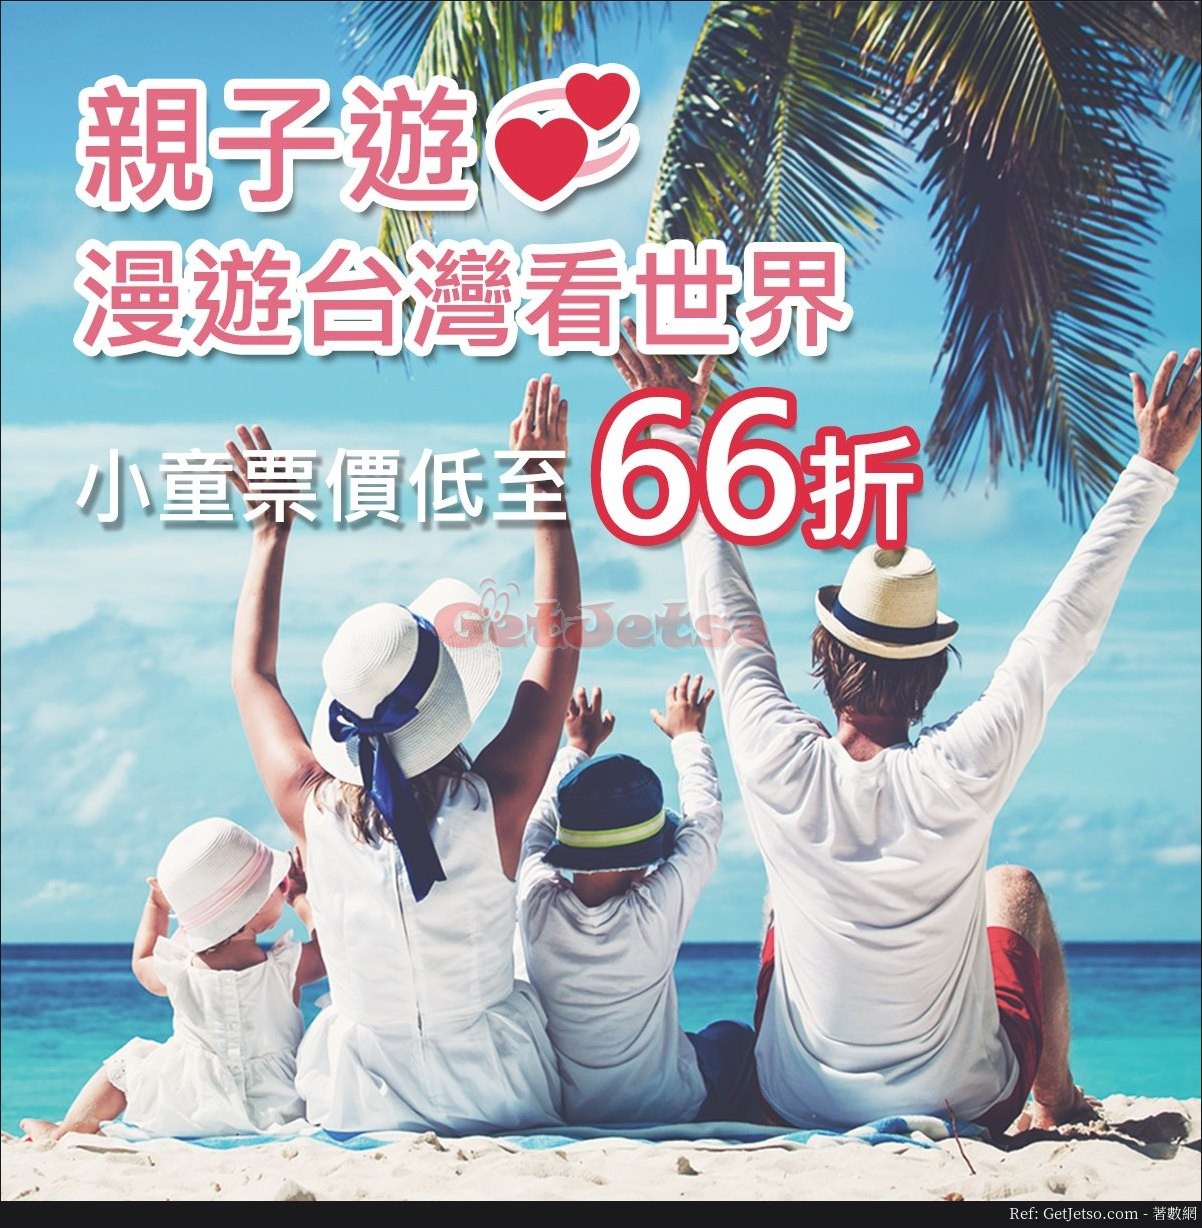 中華航空低至66折兒童票價機票優惠(至19年6月30日)圖片1